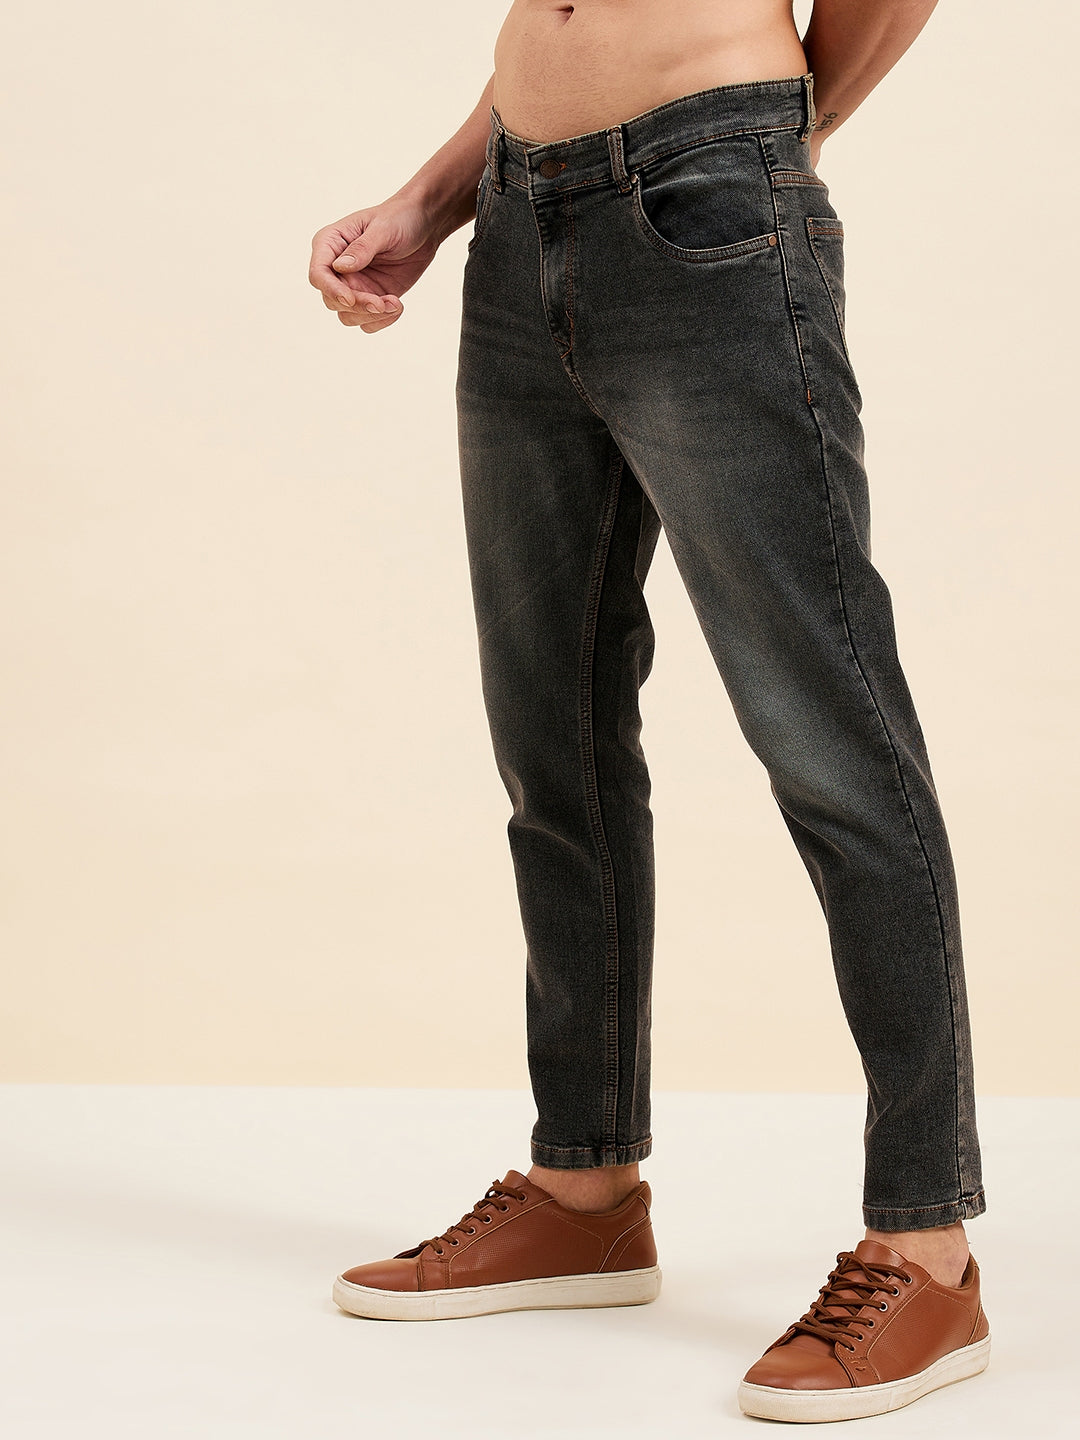 Men's Charcoal Grey Slim Fit Jeans - LYUSH-MASCLN